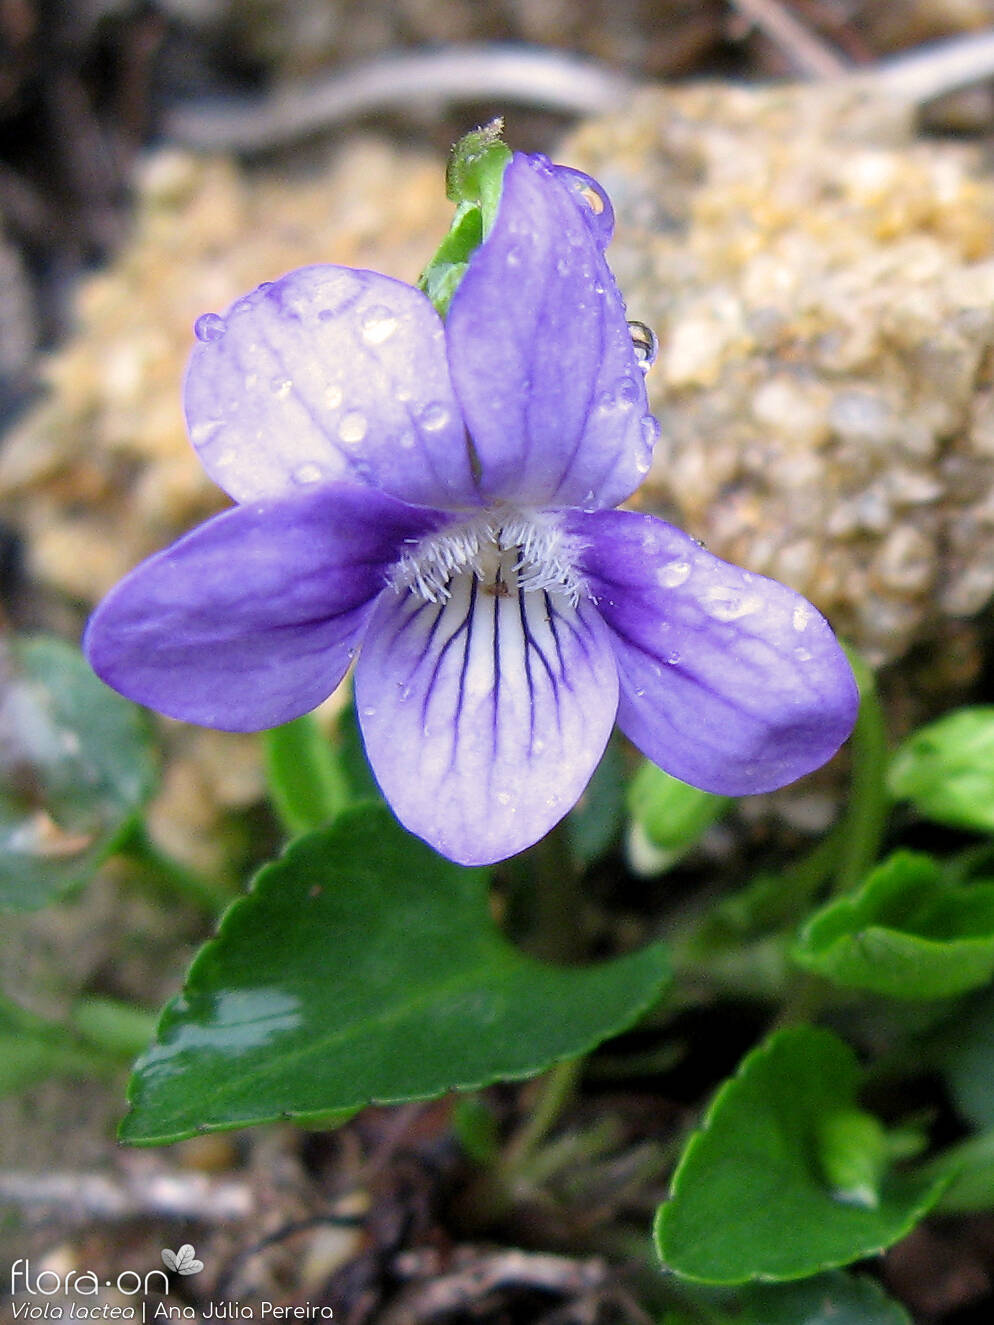 Viola lactea - Flor (close-up) | Ana Júlia Pereira; CC BY-NC 4.0